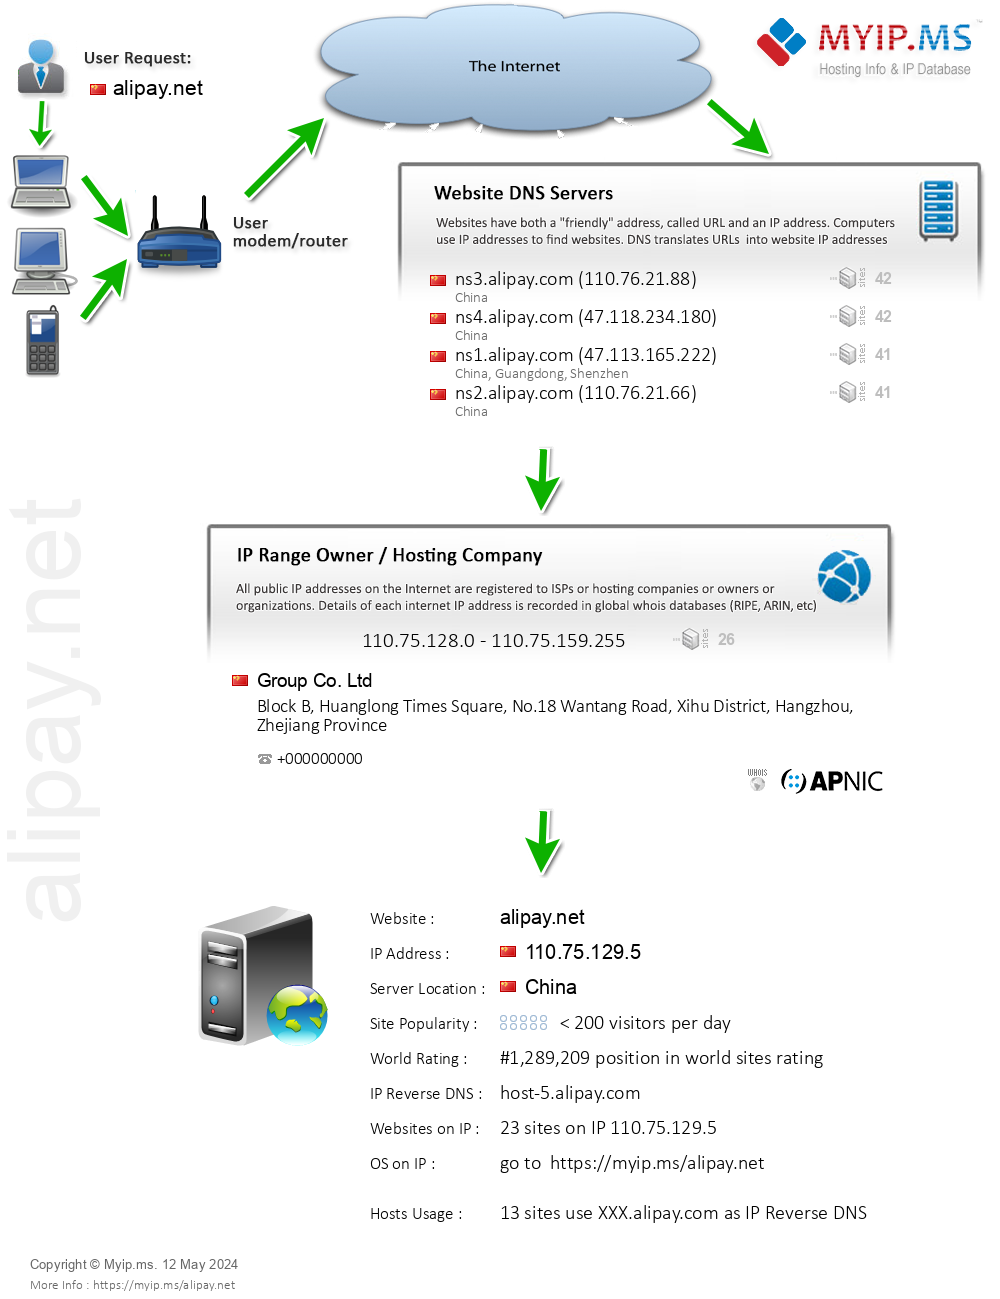 Alipay.net - Website Hosting Visual IP Diagram